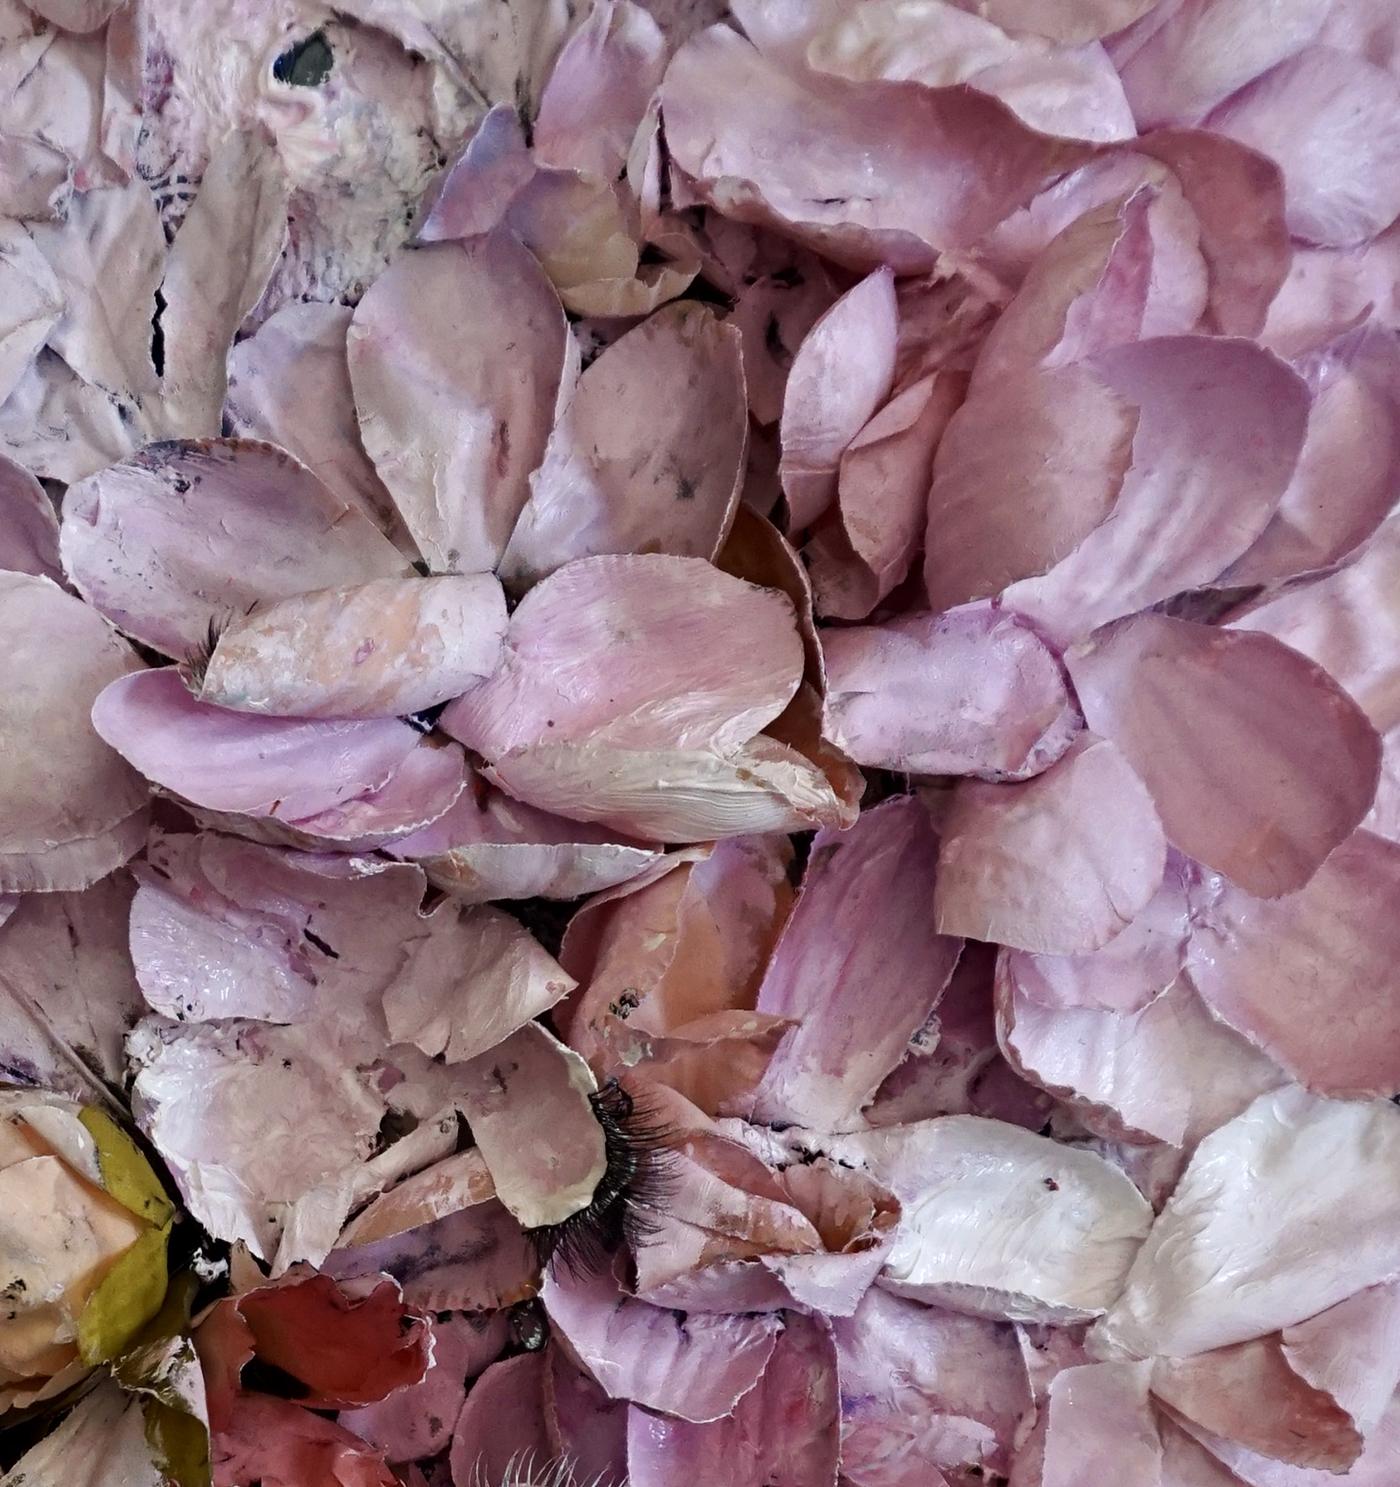 Tactile memory #122. Mixed Media silk petals, eyelashes, glass, acrylic on Wood - Brown Abstract Painting by Natasha Zupan